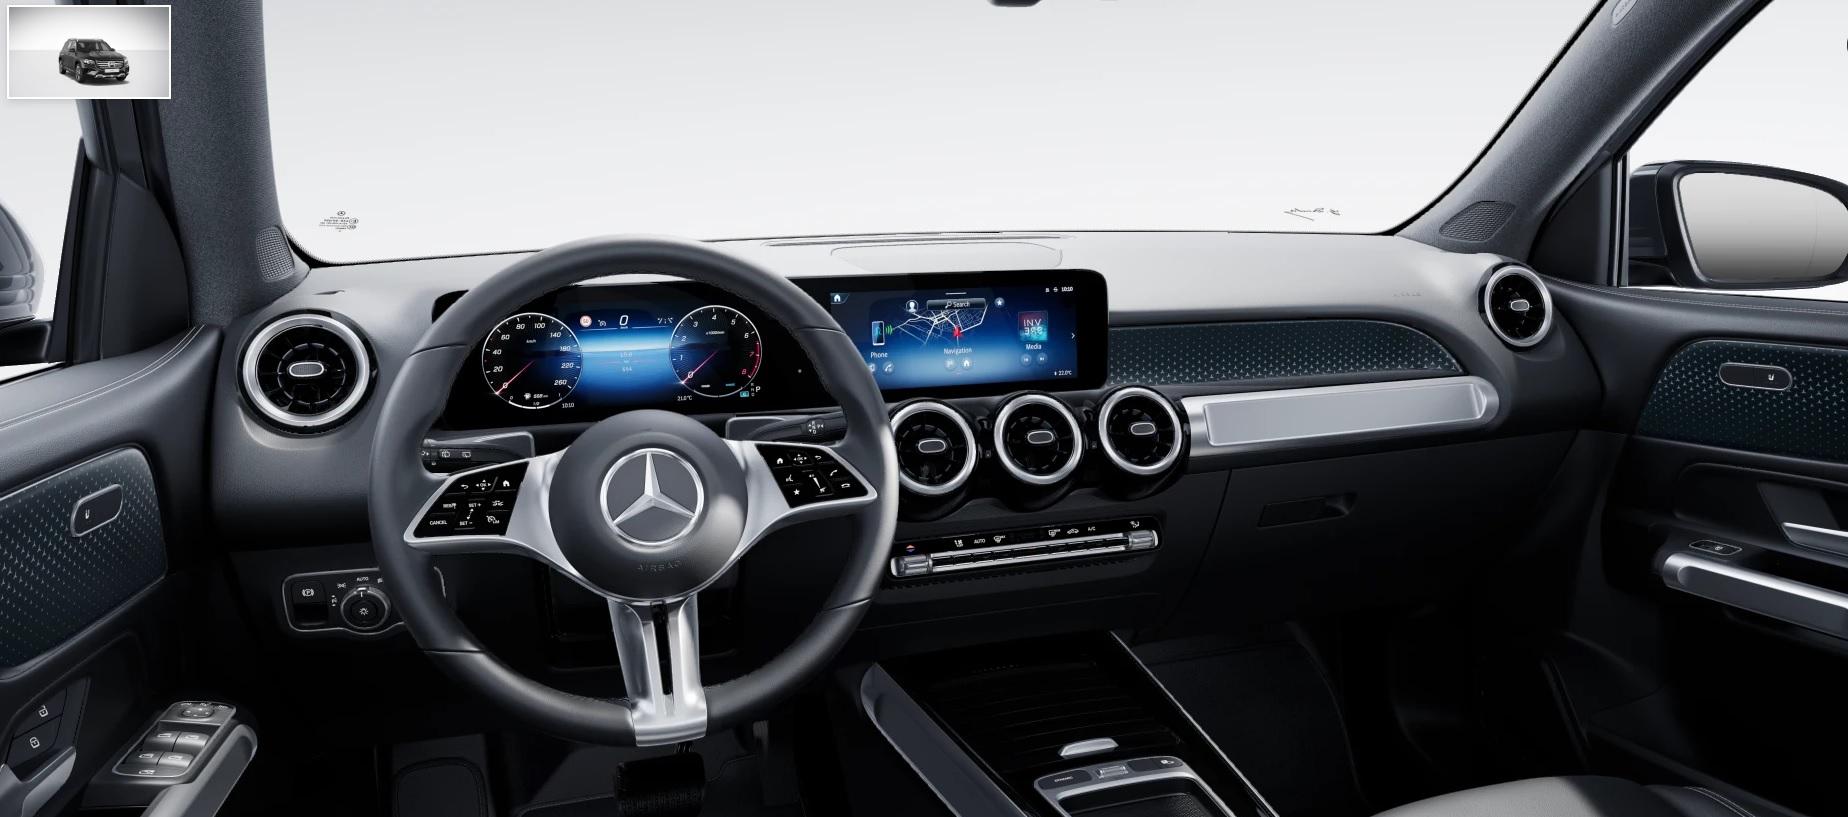 Druckausgabe Mercedes Benz GLB Start-Paket Modelljahr 2020